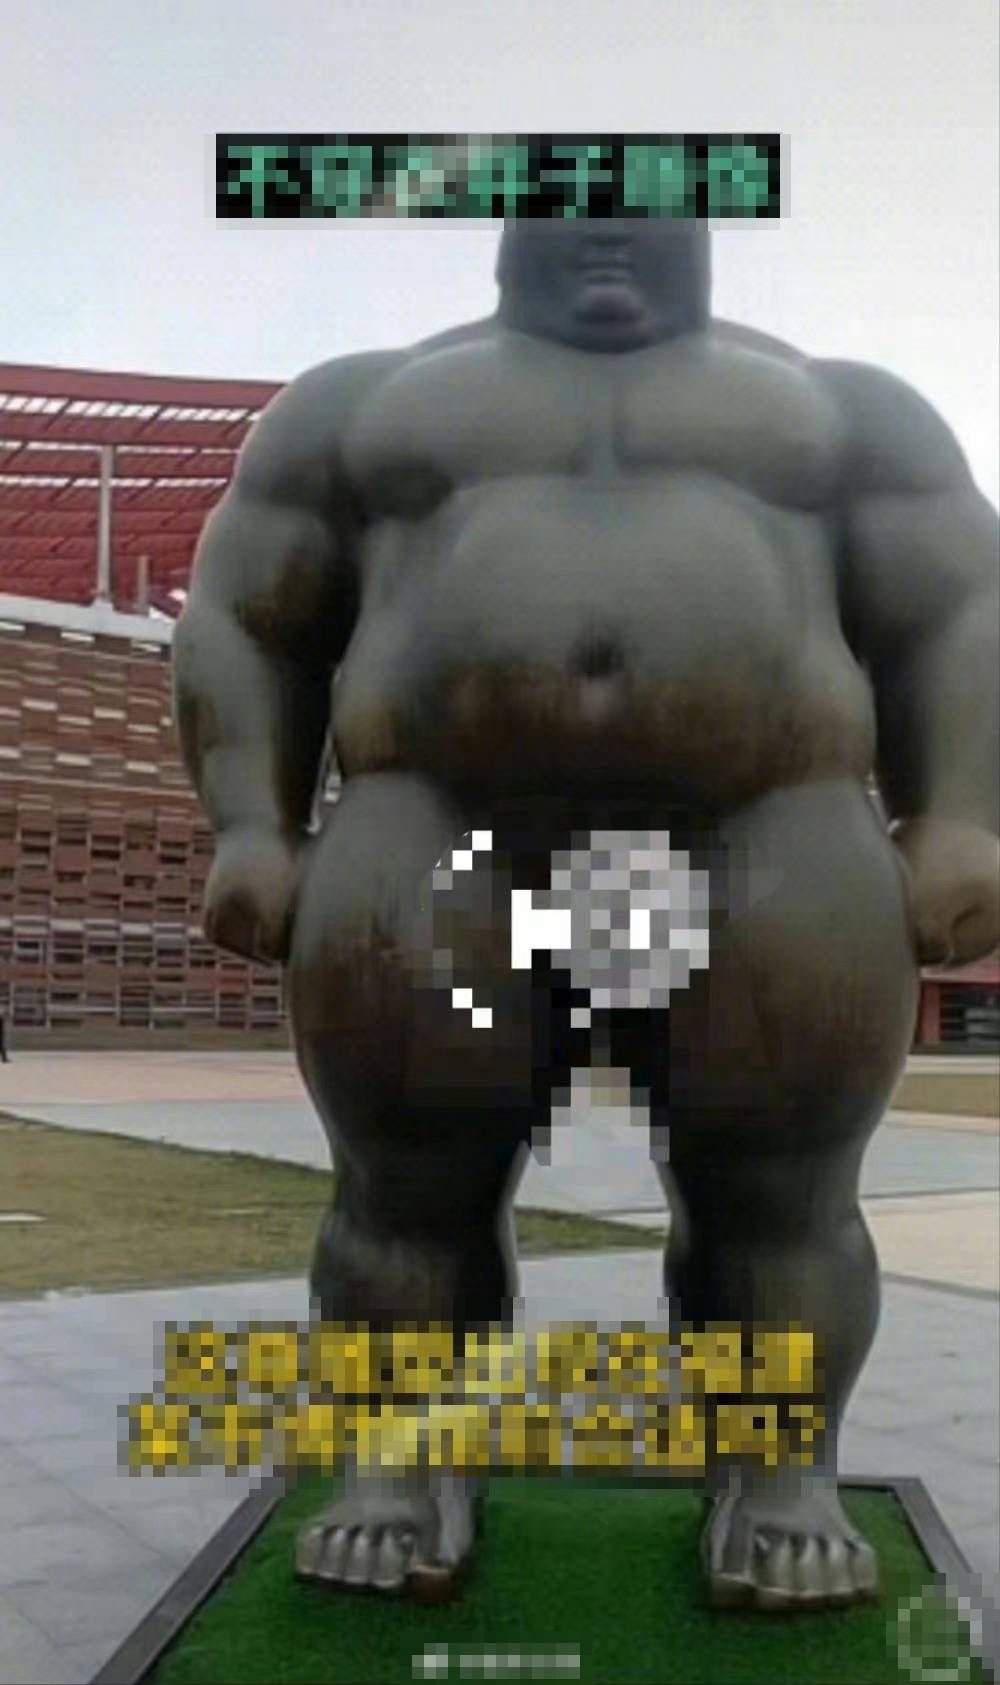 福州漳州博物館赤裸胖子雕塑被投訴。